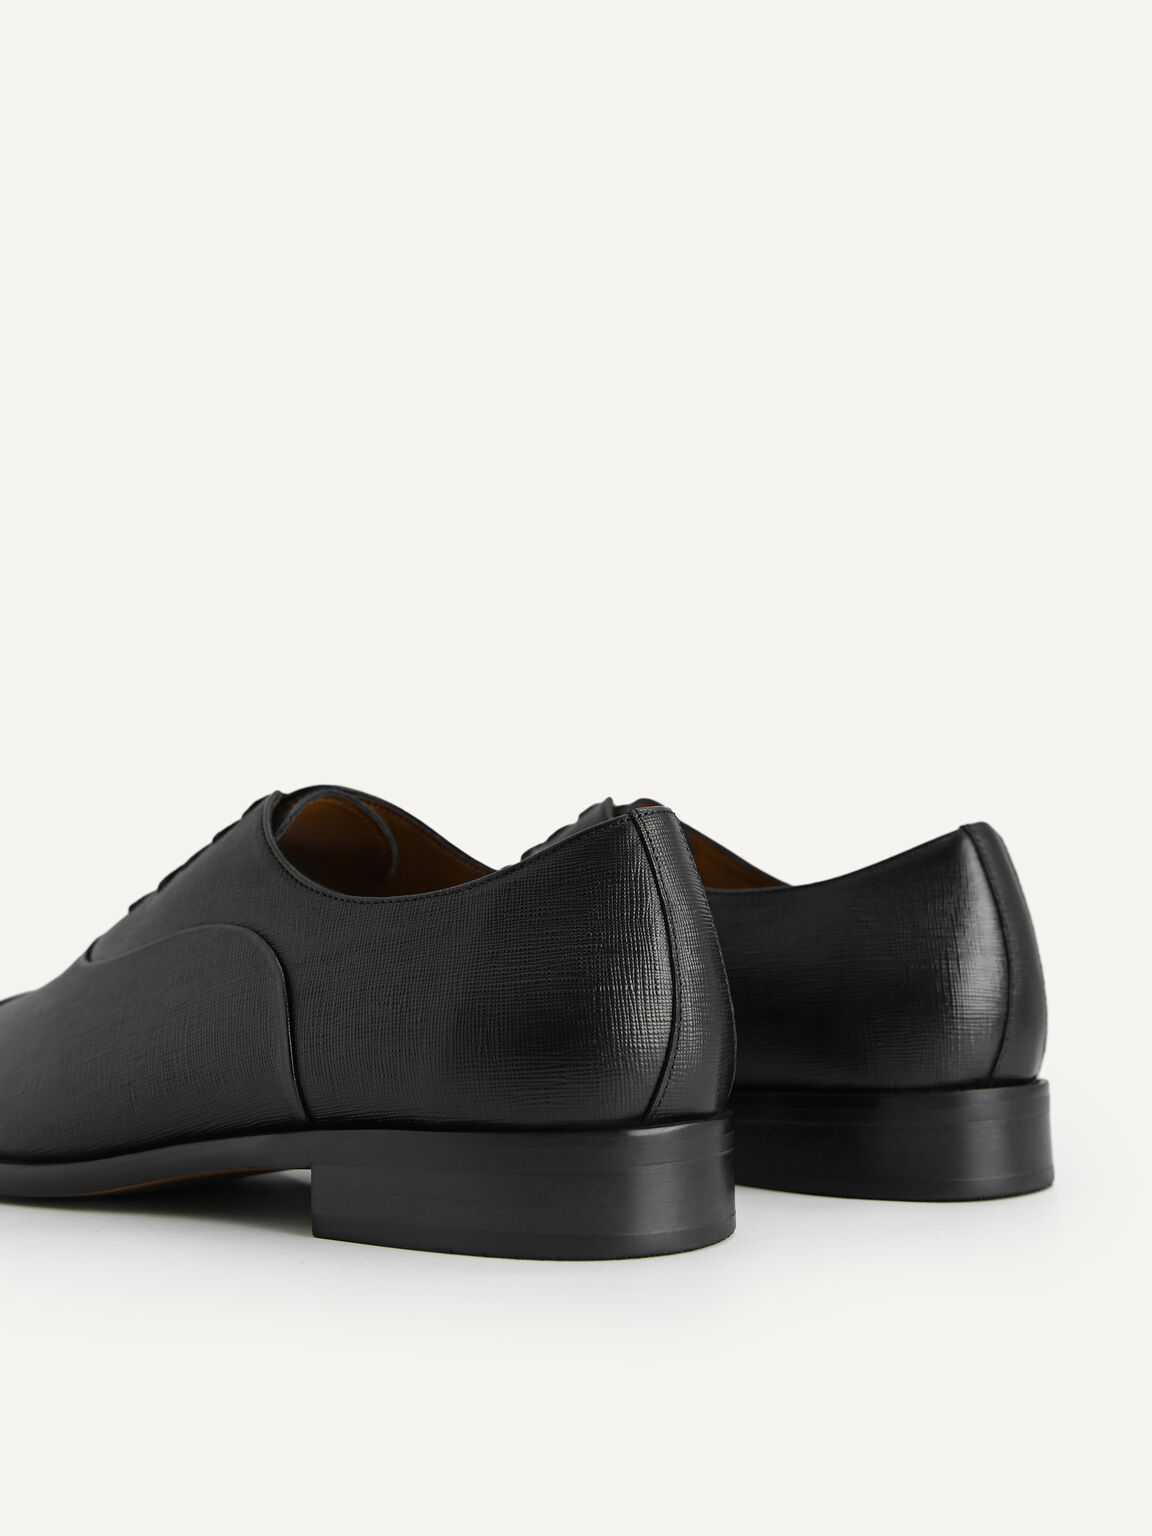 紋理皮革牛津鞋, 黑色